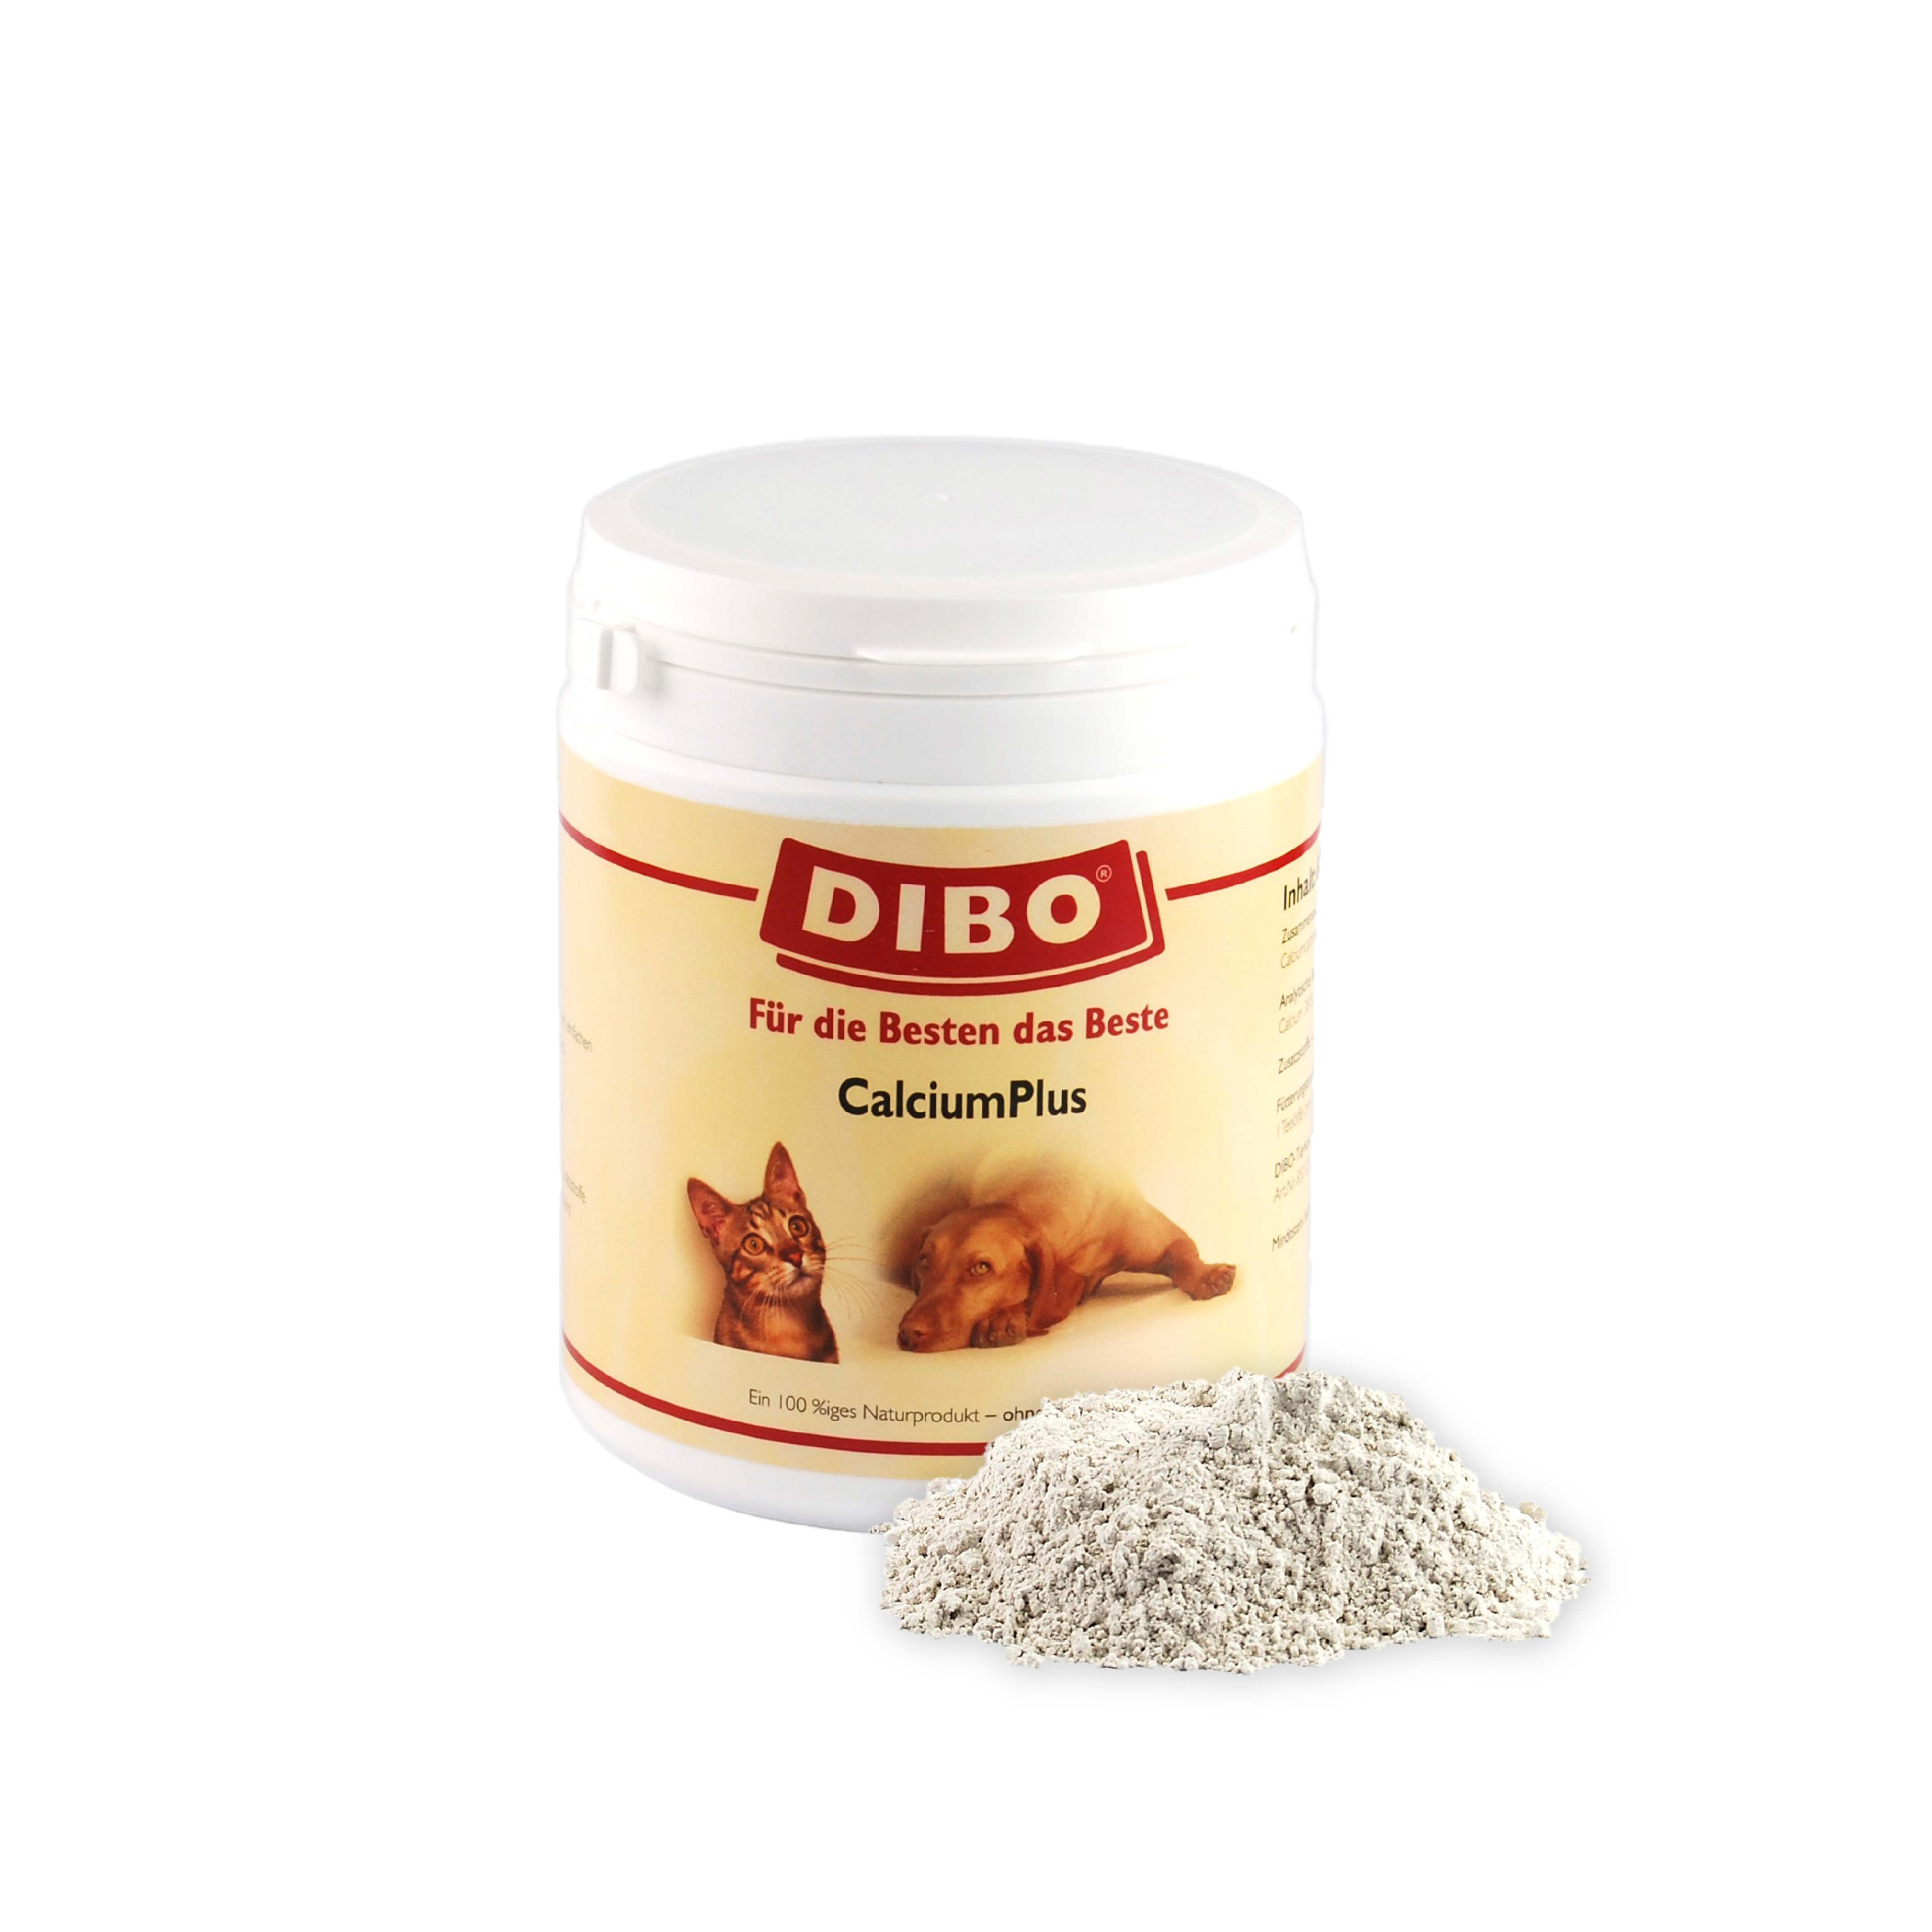 DIBO Calcium Plus, 800g-Dose